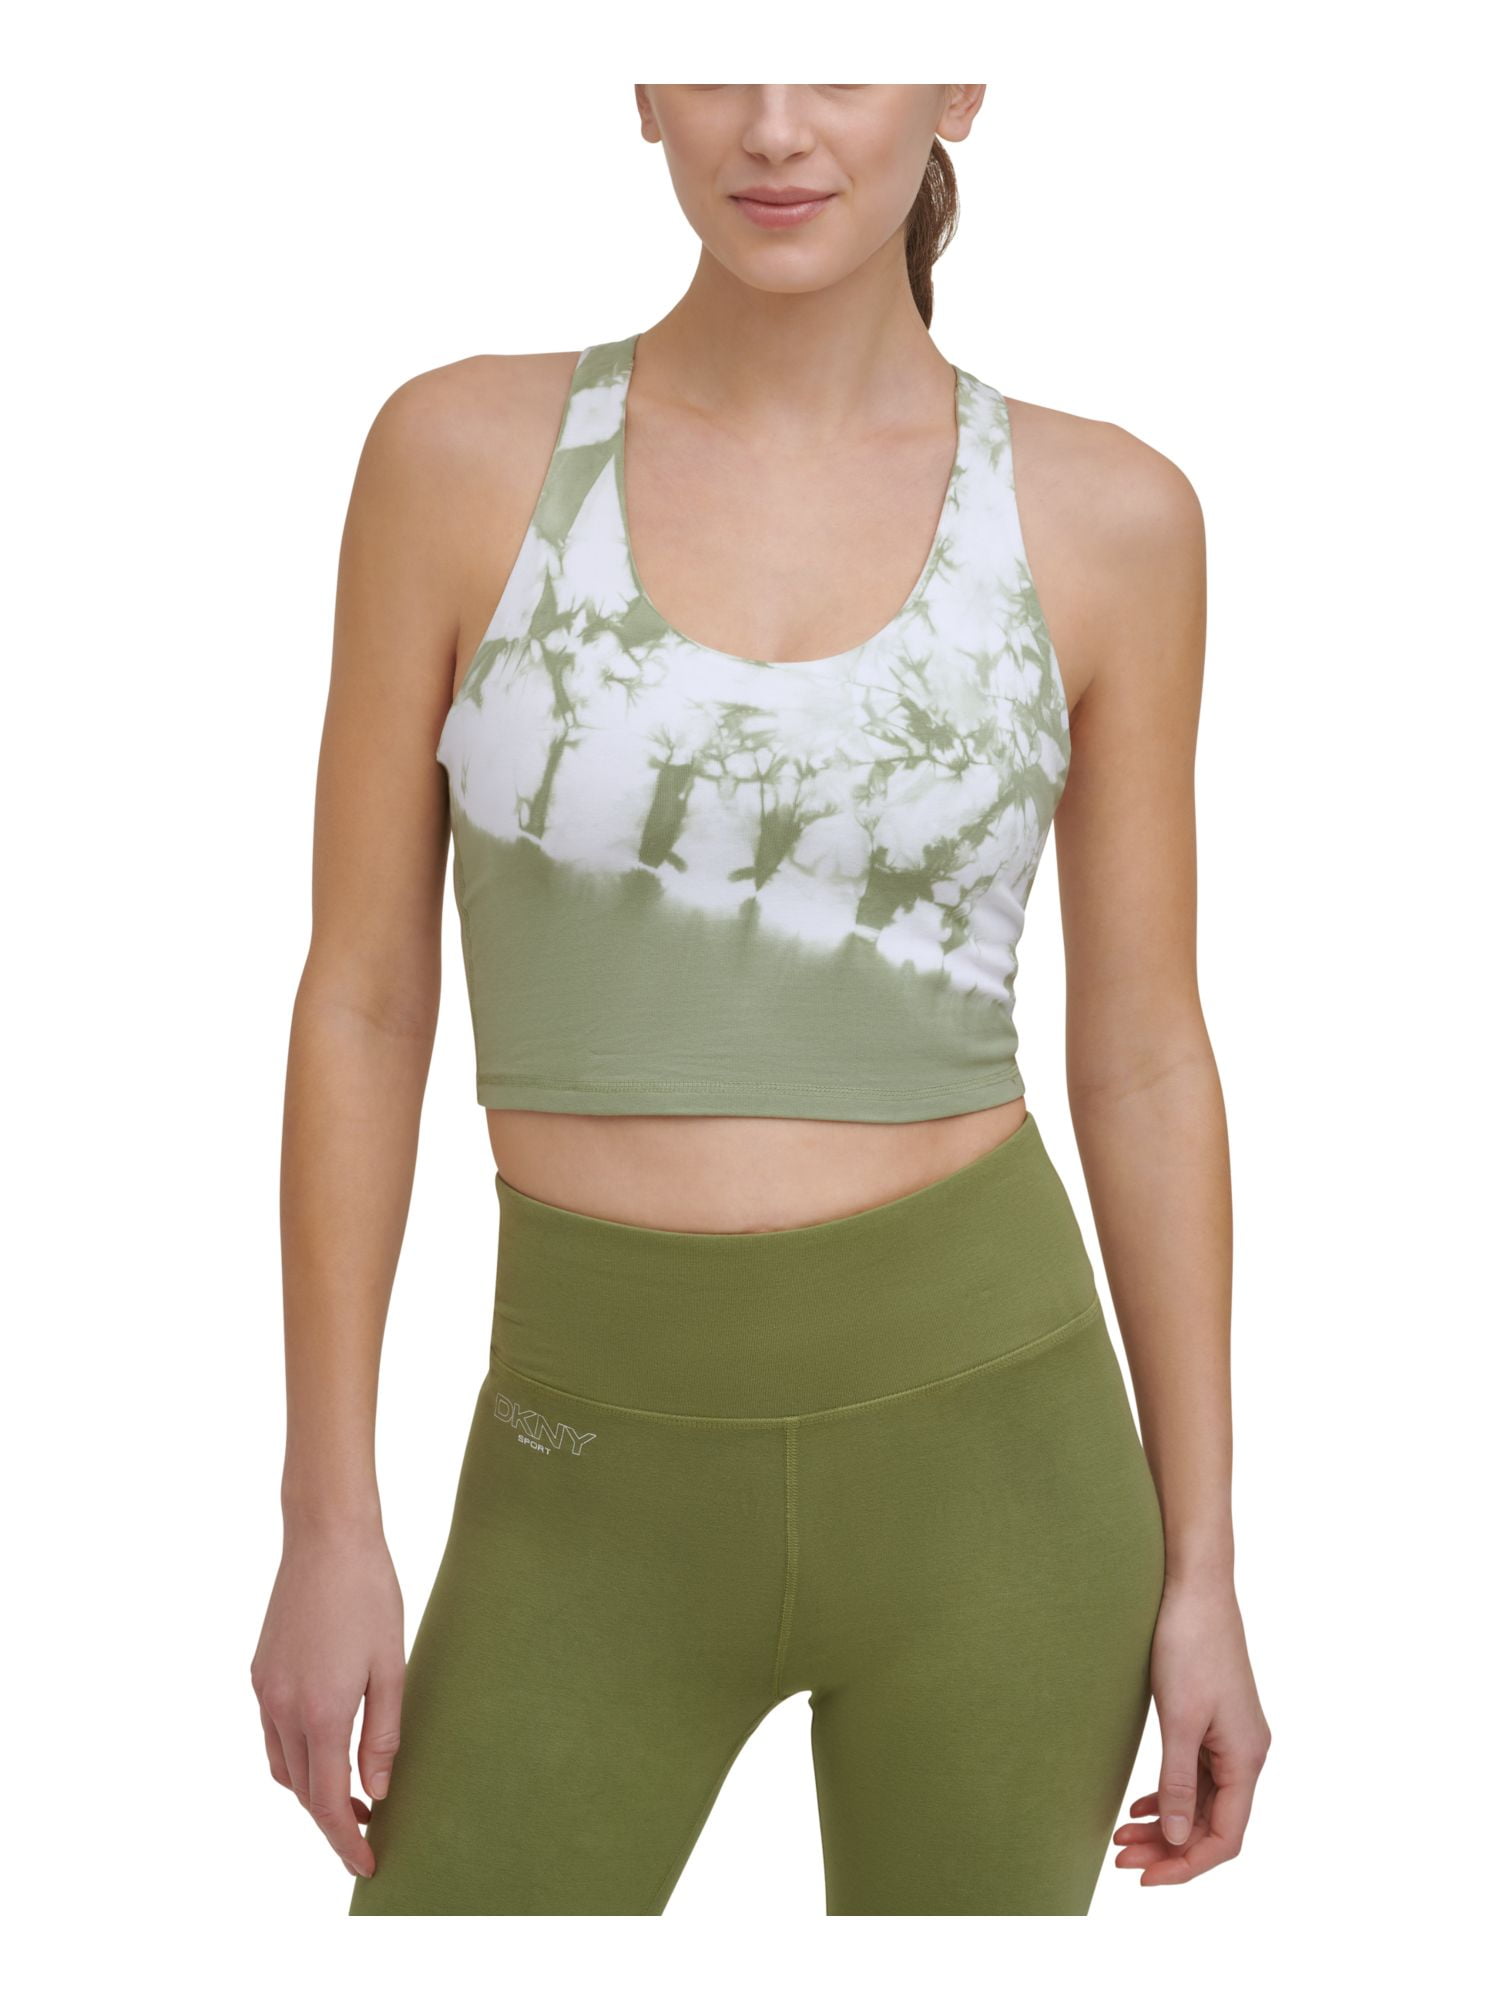 Dkny Sport Women's Tie-Dyed Long-Line Sports Bra Green Size S MSRP $45 